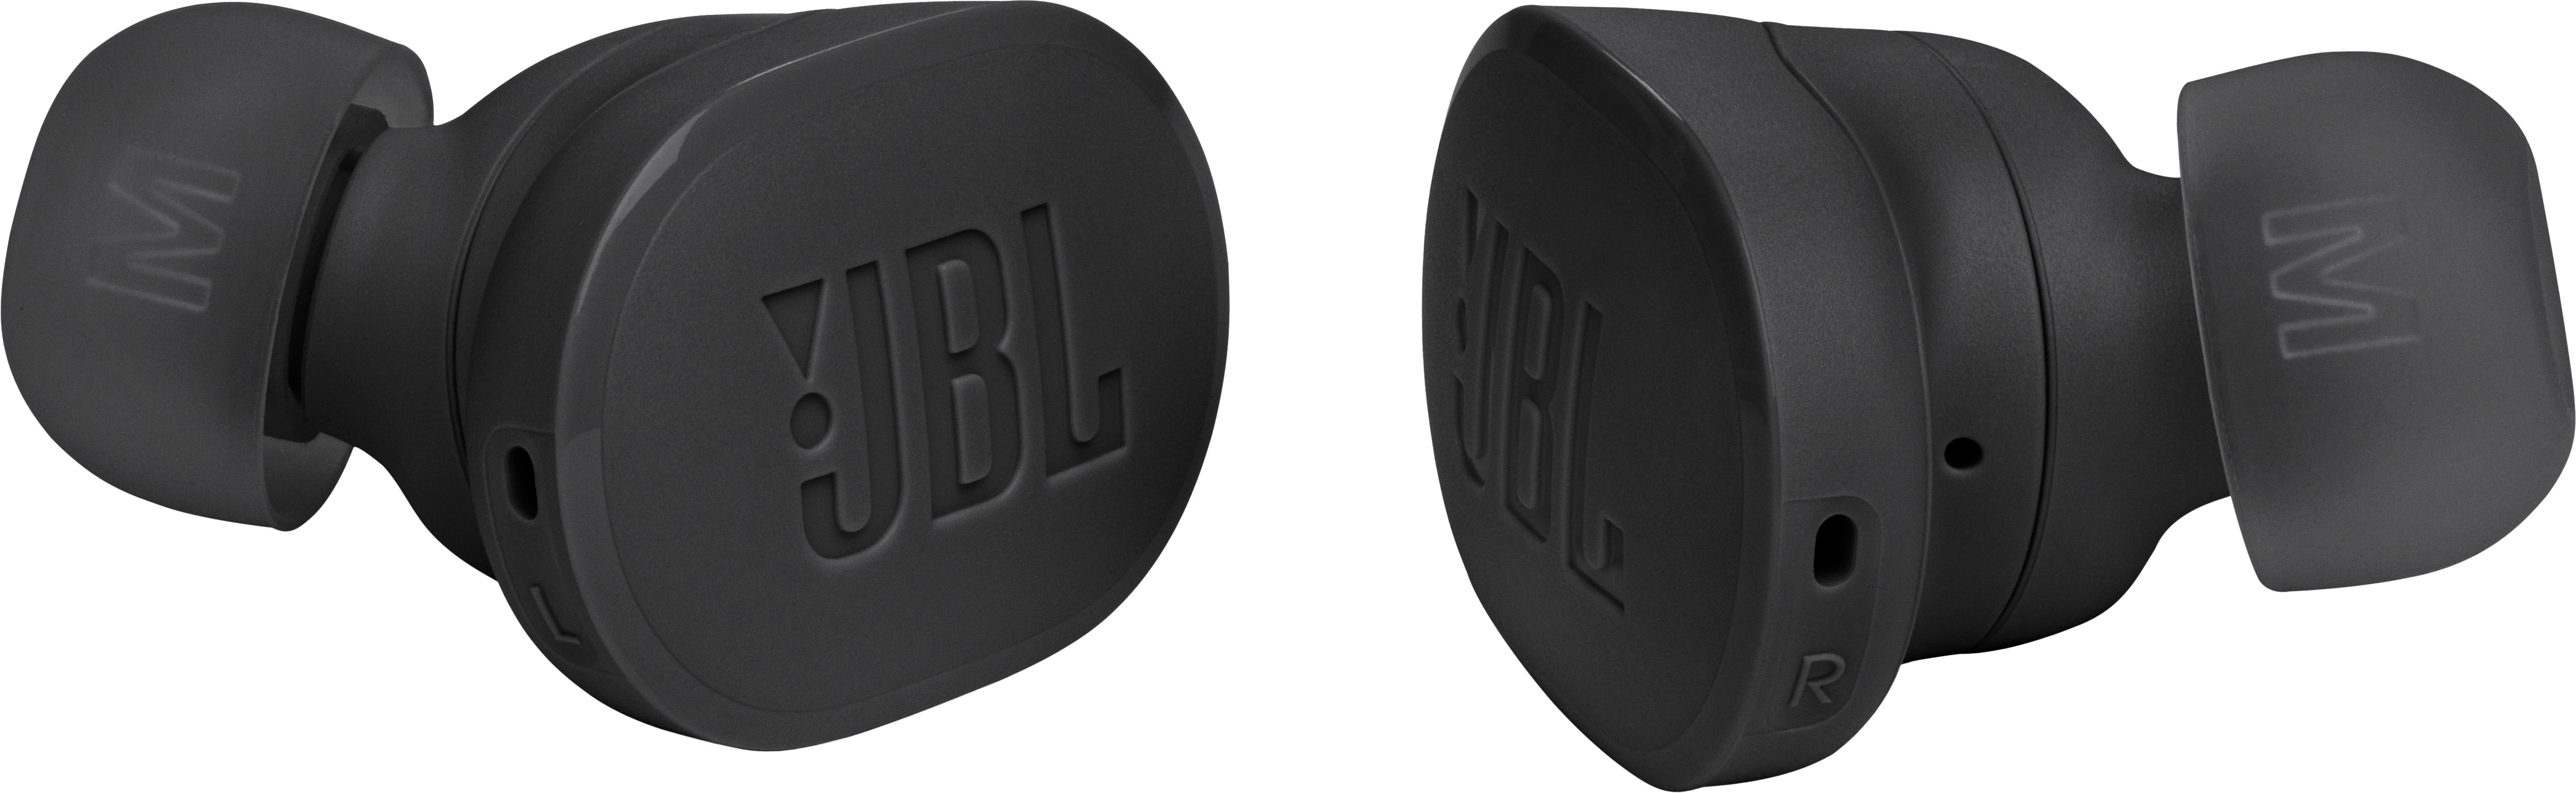 Buds Cancelling Buy JBLTBUDSBLKAM JBL True Wireless - Noise Best Tune Earbuds Black